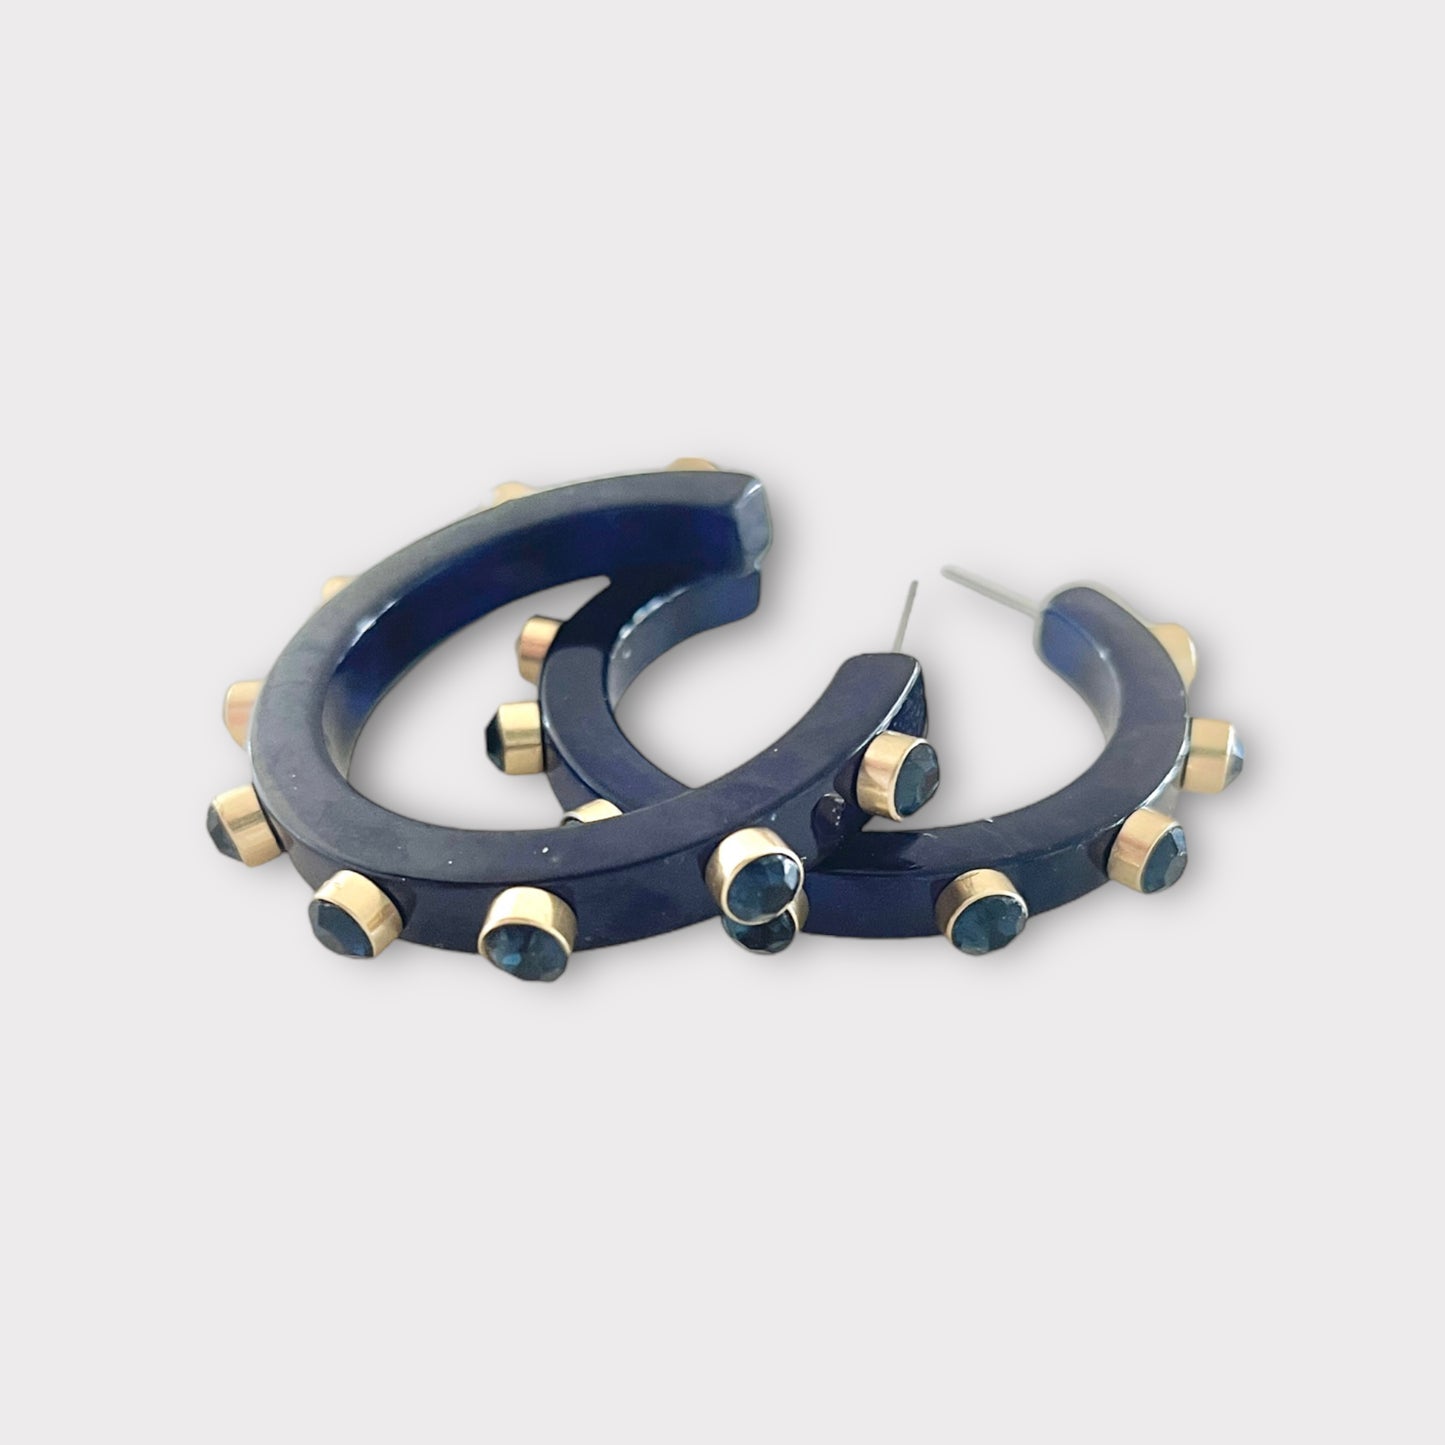 Resin Embellished Hoop Earrings - Navy